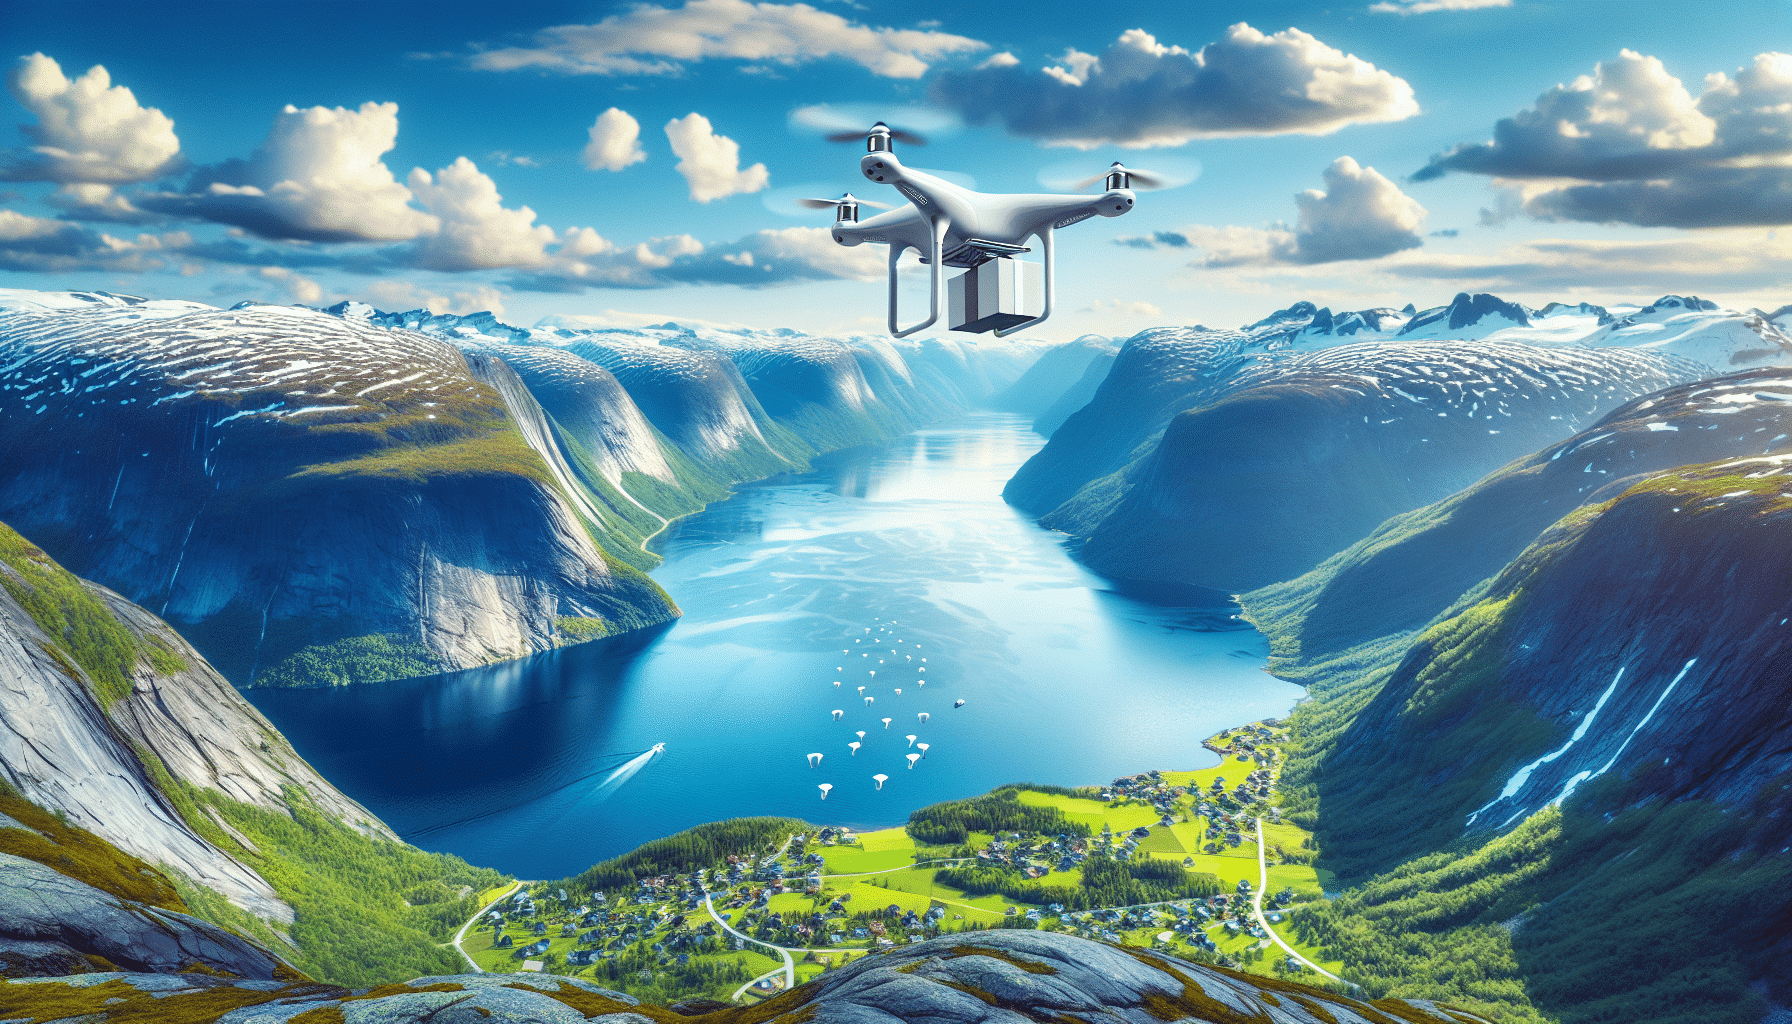 noruega lanza su servicio de entrega a domicilio con drones autónomos, dando inicio a una era de innovación y eficiencia en la logística de distribución.